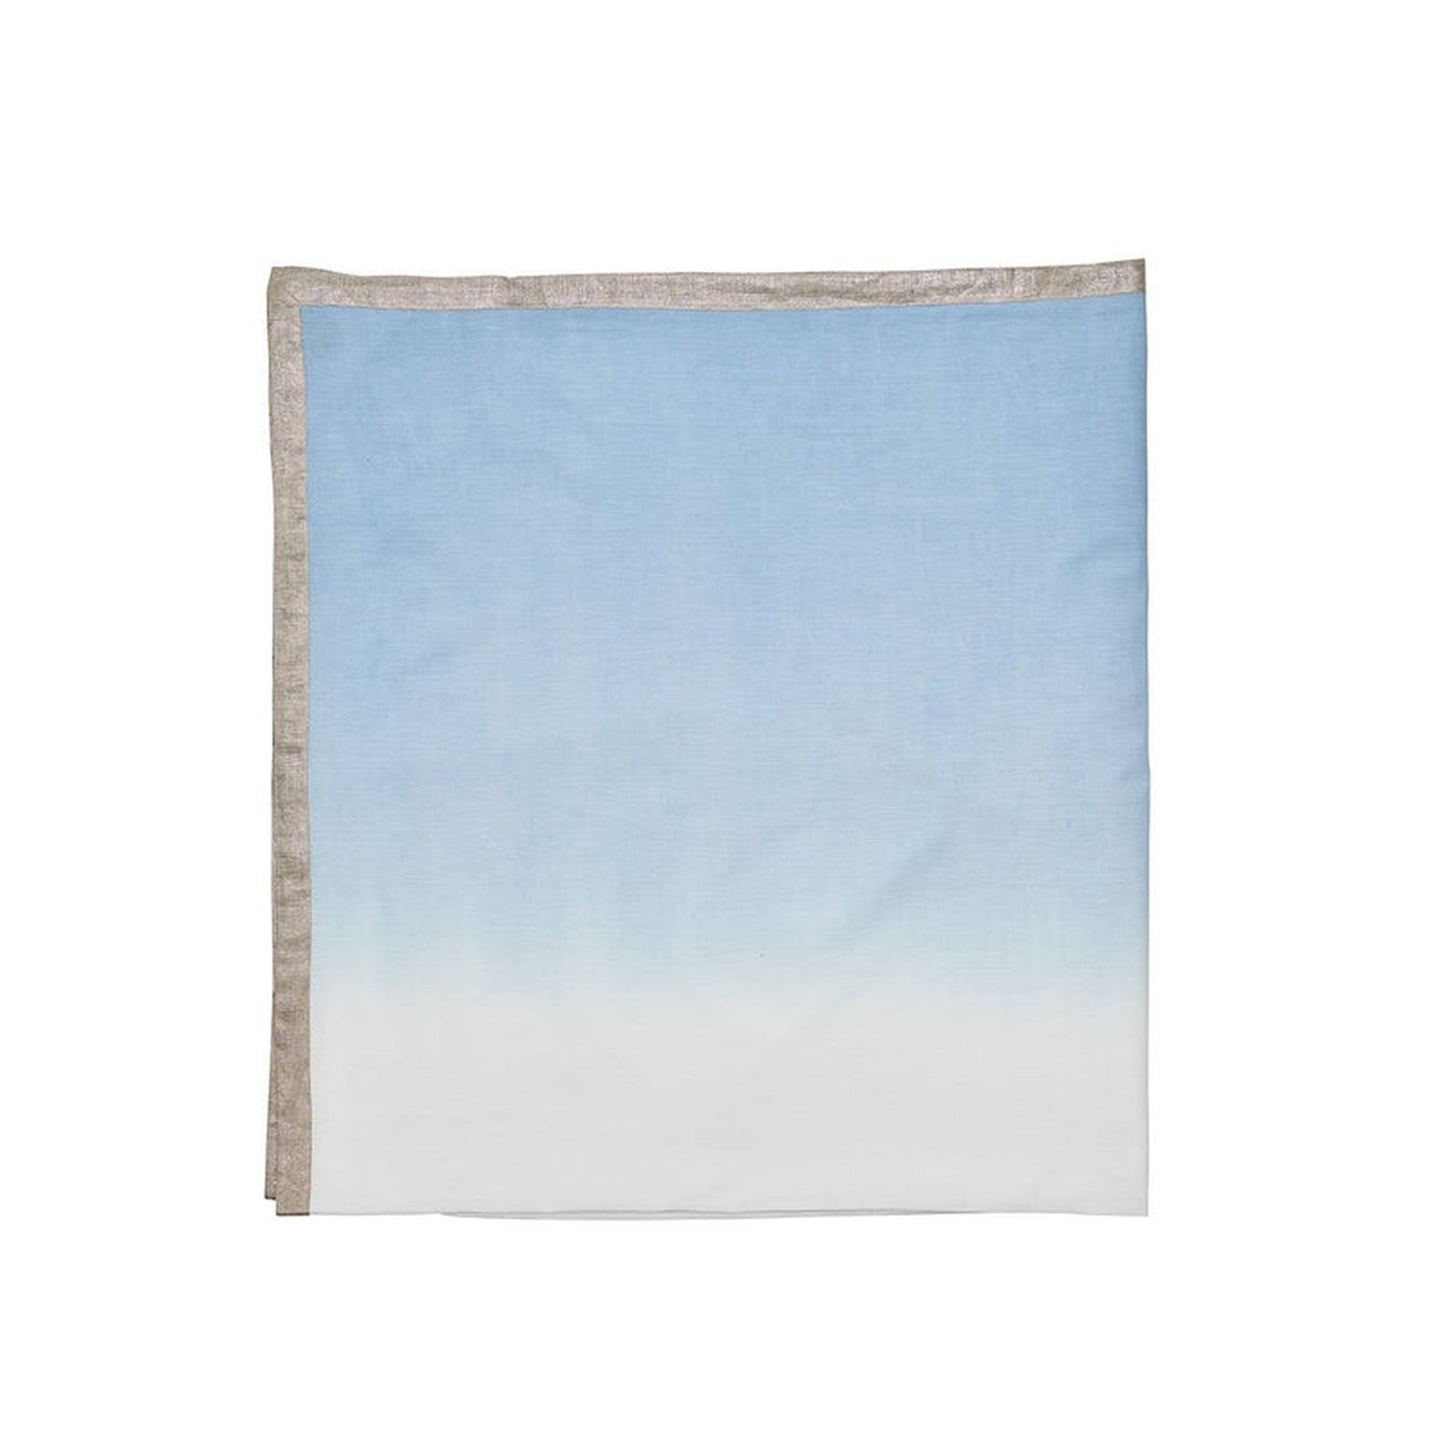 Kim Seybert Table Cloth: Dip Dye 58"X112", White/Periwinkle